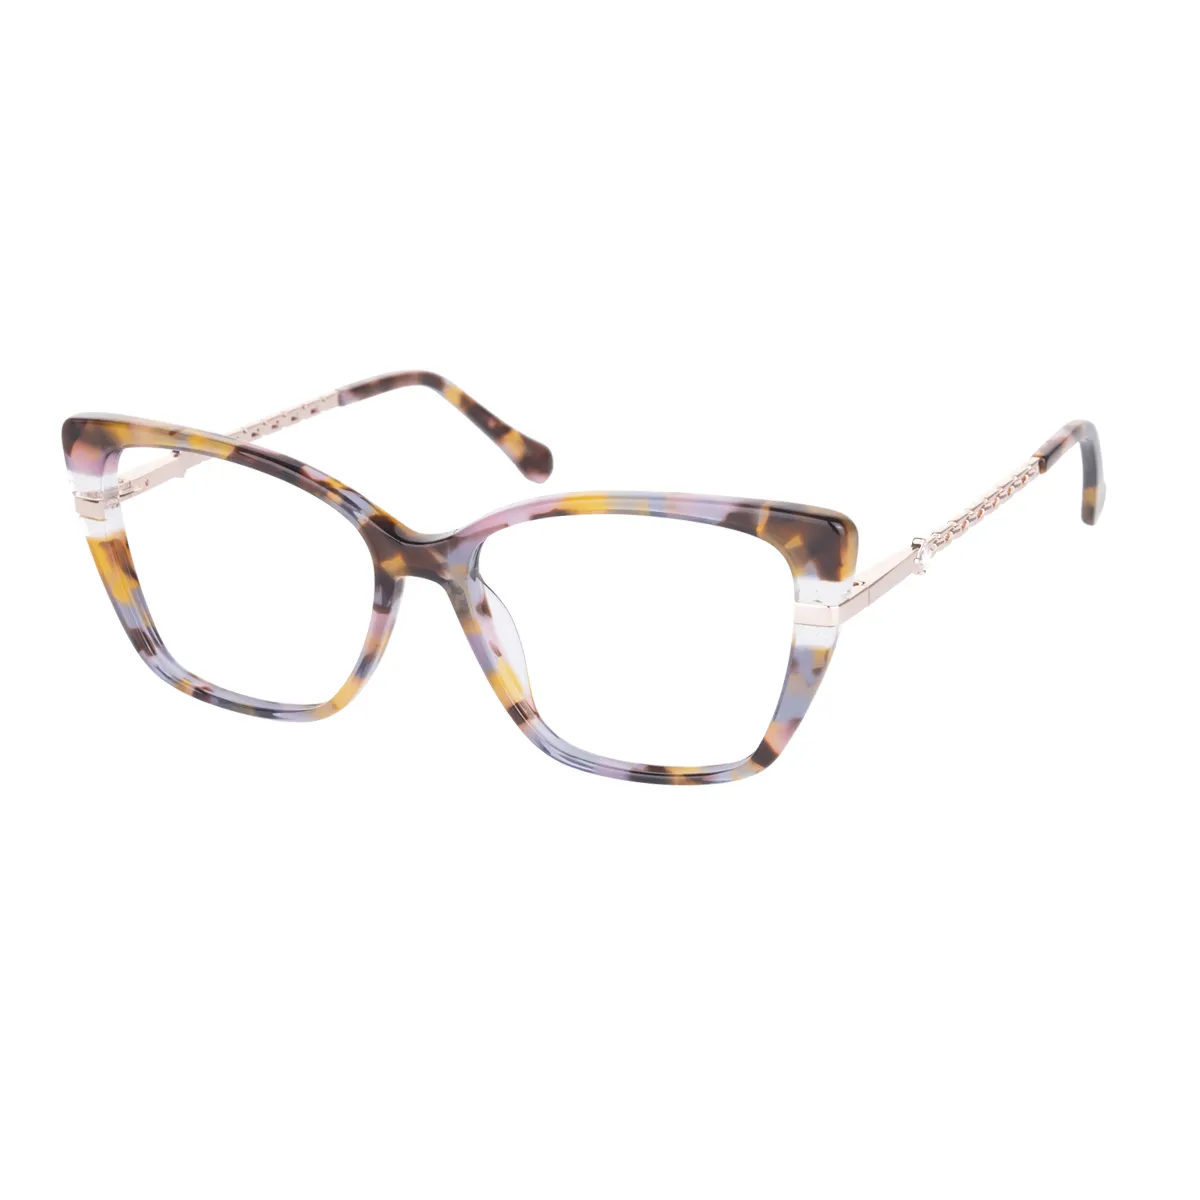 Isabella - Cat-eye Tortoiseshell Glasses for Women